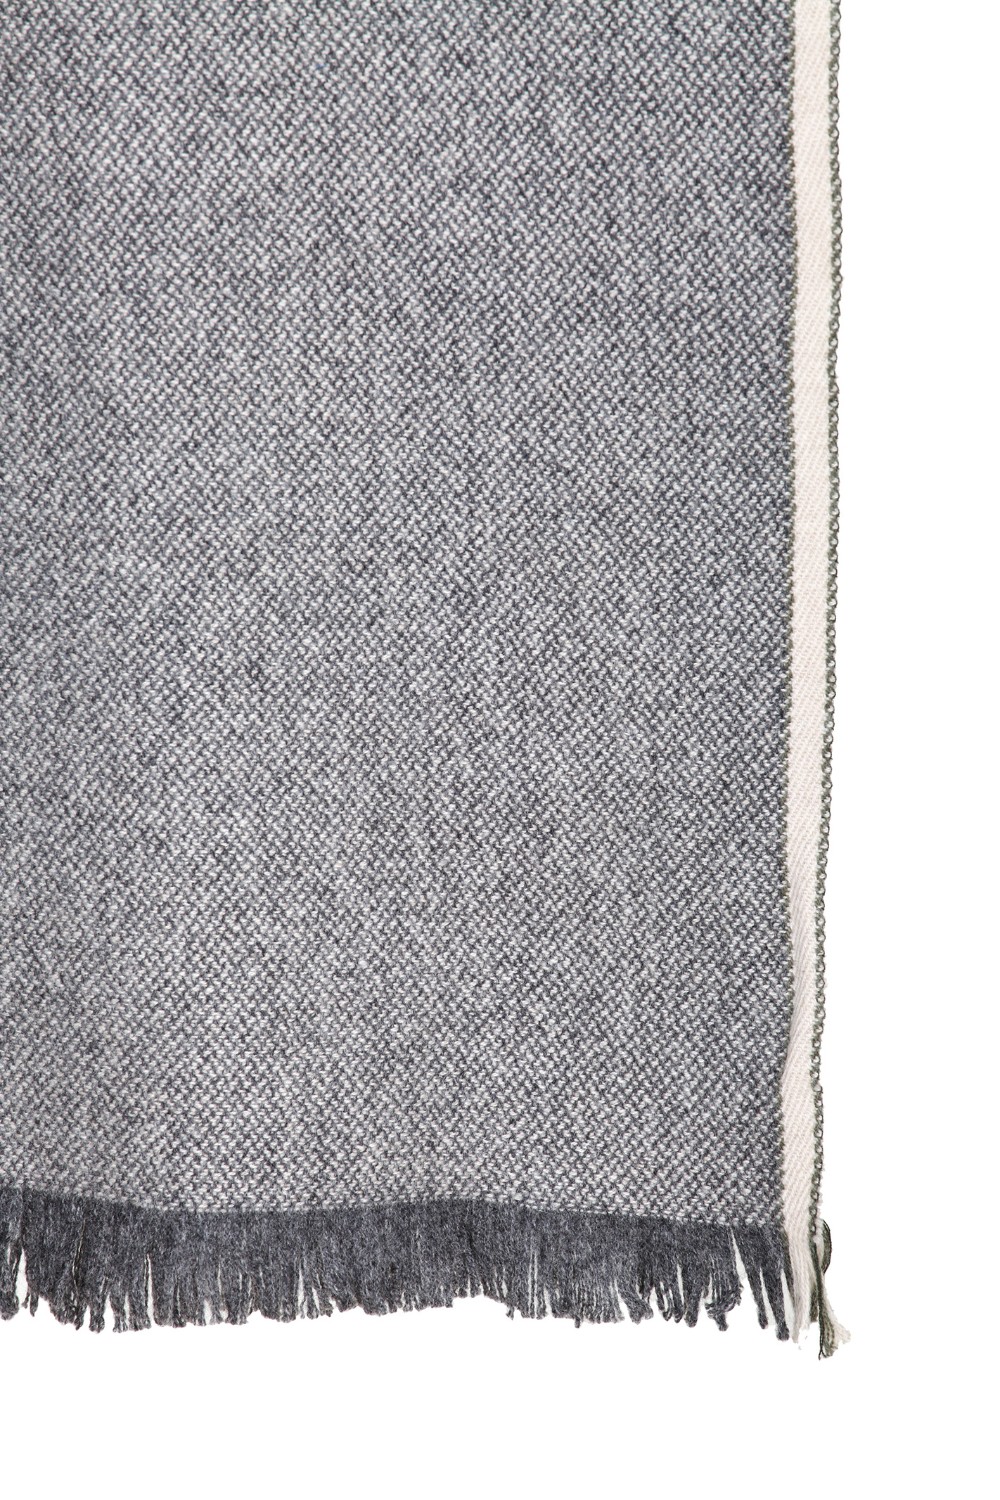 shop BRUNELLO CUCINELLI  Sciarpa: Brunello Cucinelli sciarpa in cashmere con bordi sfrangiati.
Dimensioni: Lunghezza 180cm x Larghezza 52cm.
Composizione: 100% cashmere.
Made in Italy.. MSC632AG-CD857 number 2366595